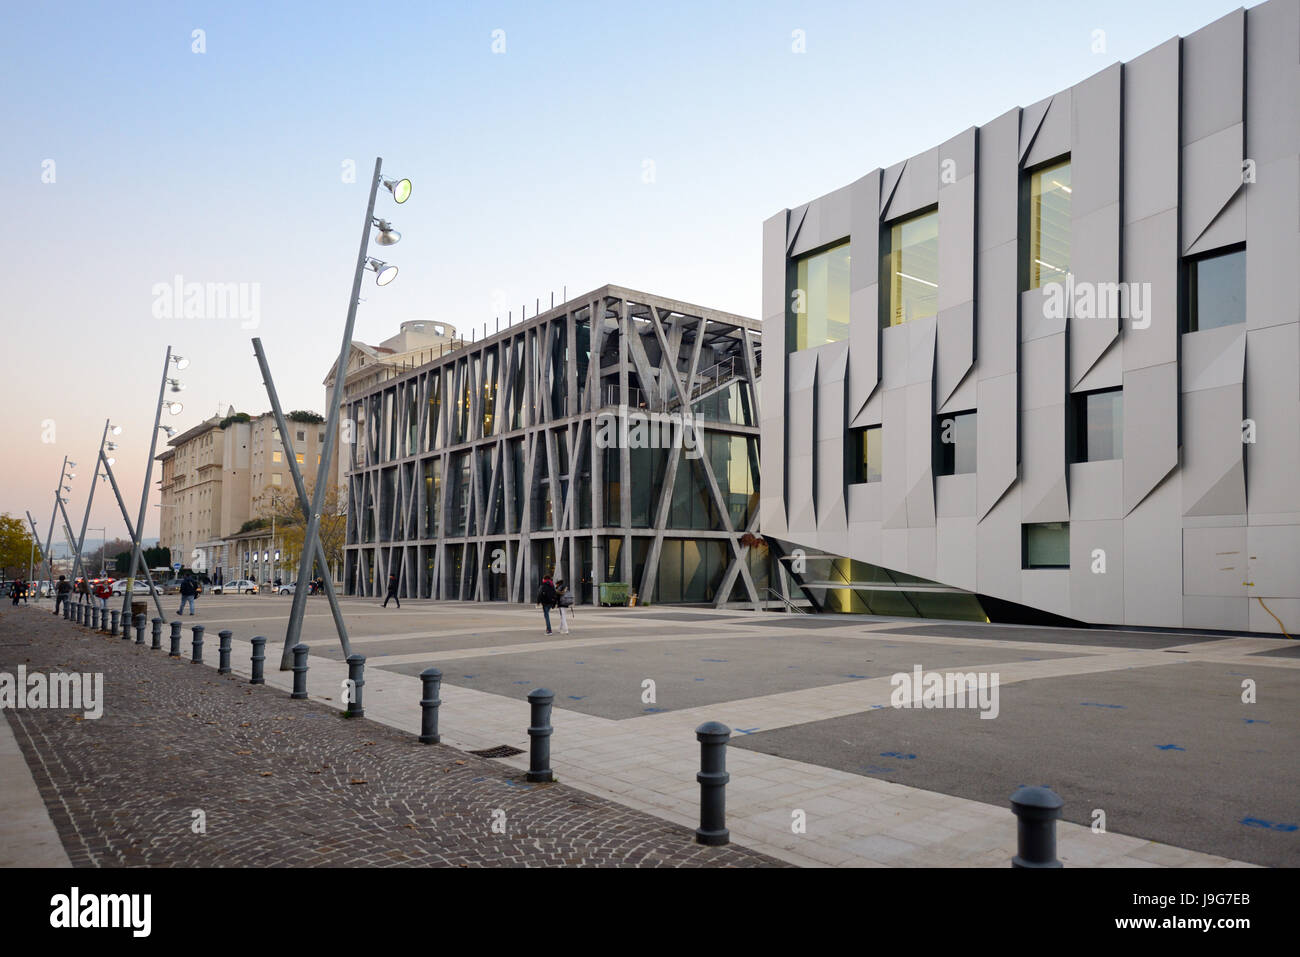 Pavillon Noir (centre) par Rudy Ricciotti & Music Conservatory (r) par Kengo Kuma, dans le quartier culturel de Aix-en-Provence France Banque D'Images